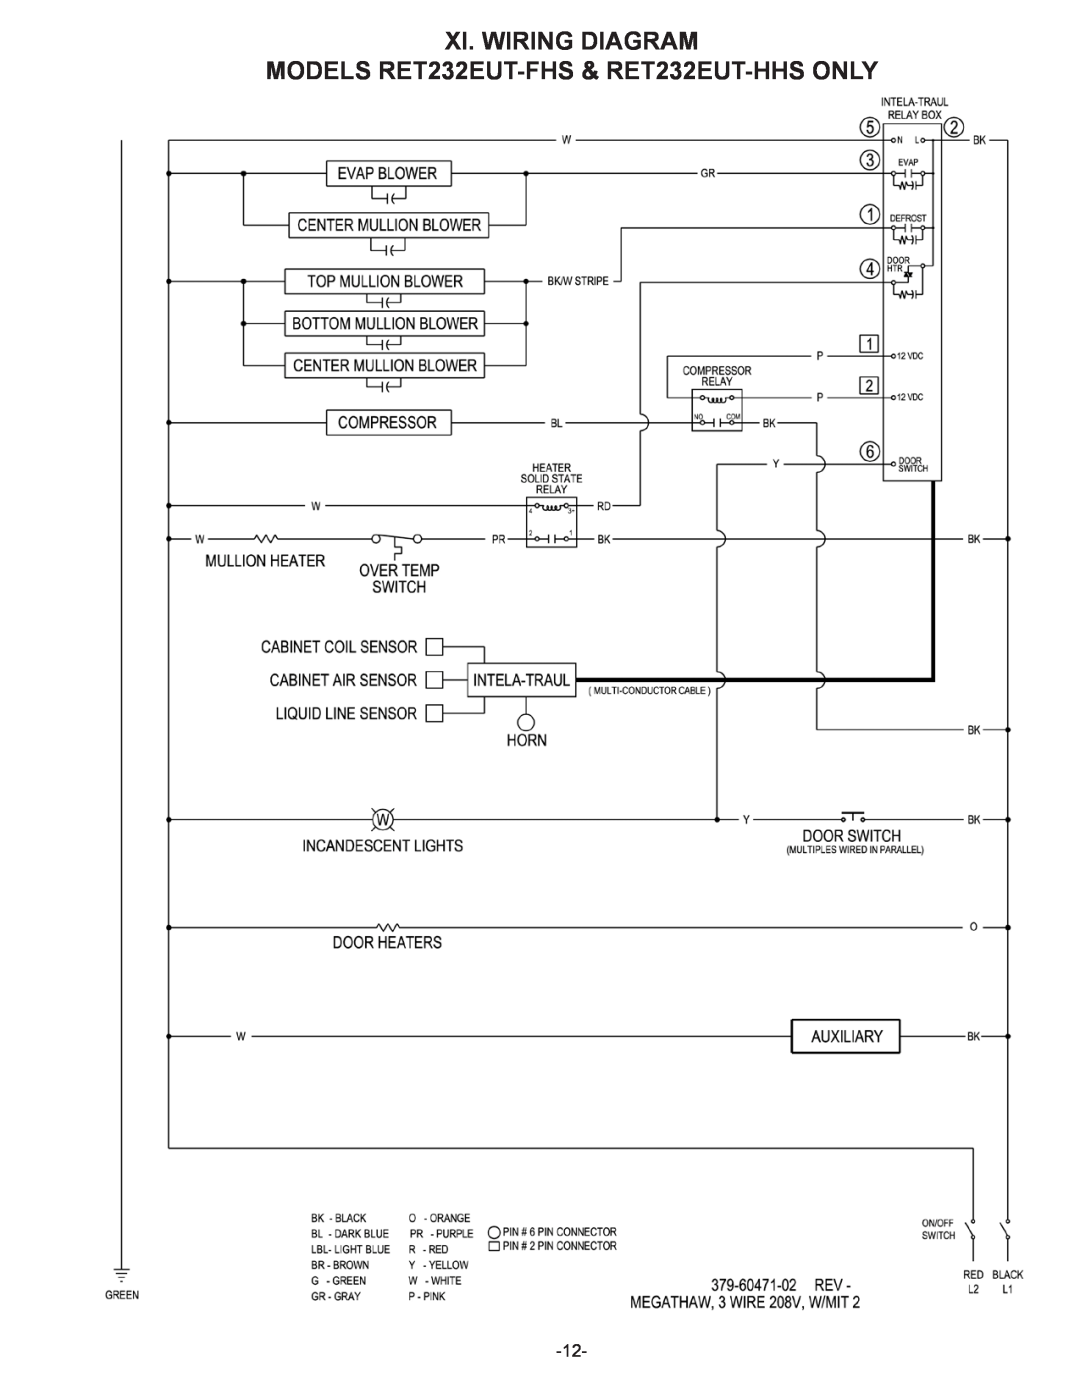 Traulsen RET232NUT, RET132EUT owner manual MODELS RET232EUT-FHS& RET232EUT-HHSONLY, Xi. Wiring Diagram 